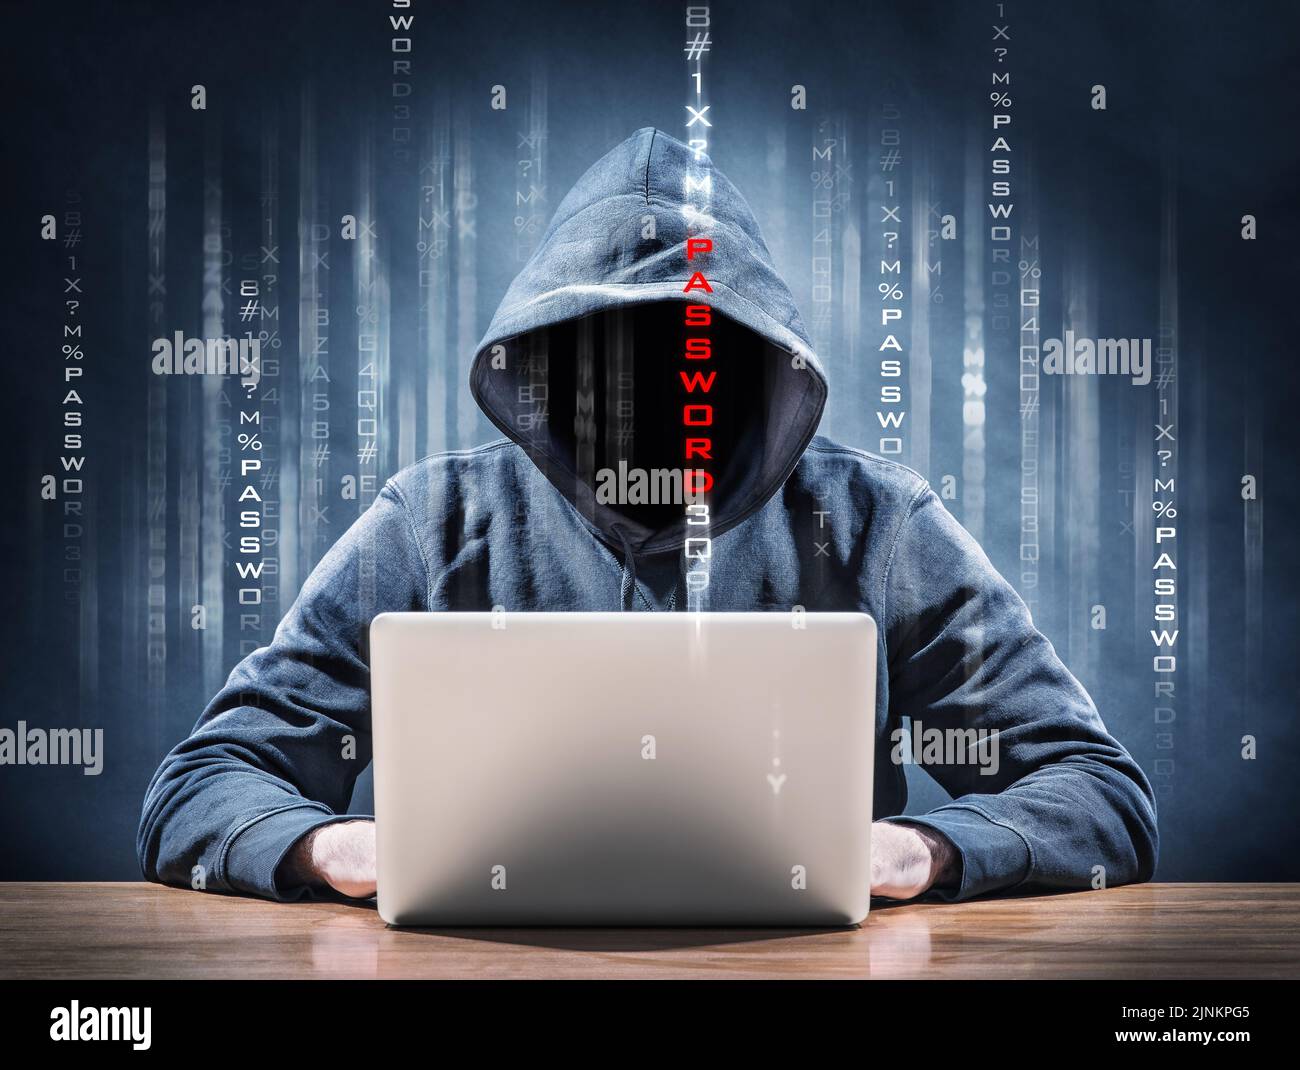 hacker, contraseña, crimen informático, nombre del beneficio, hackers, contraseñas, delitos informáticos Foto de stock